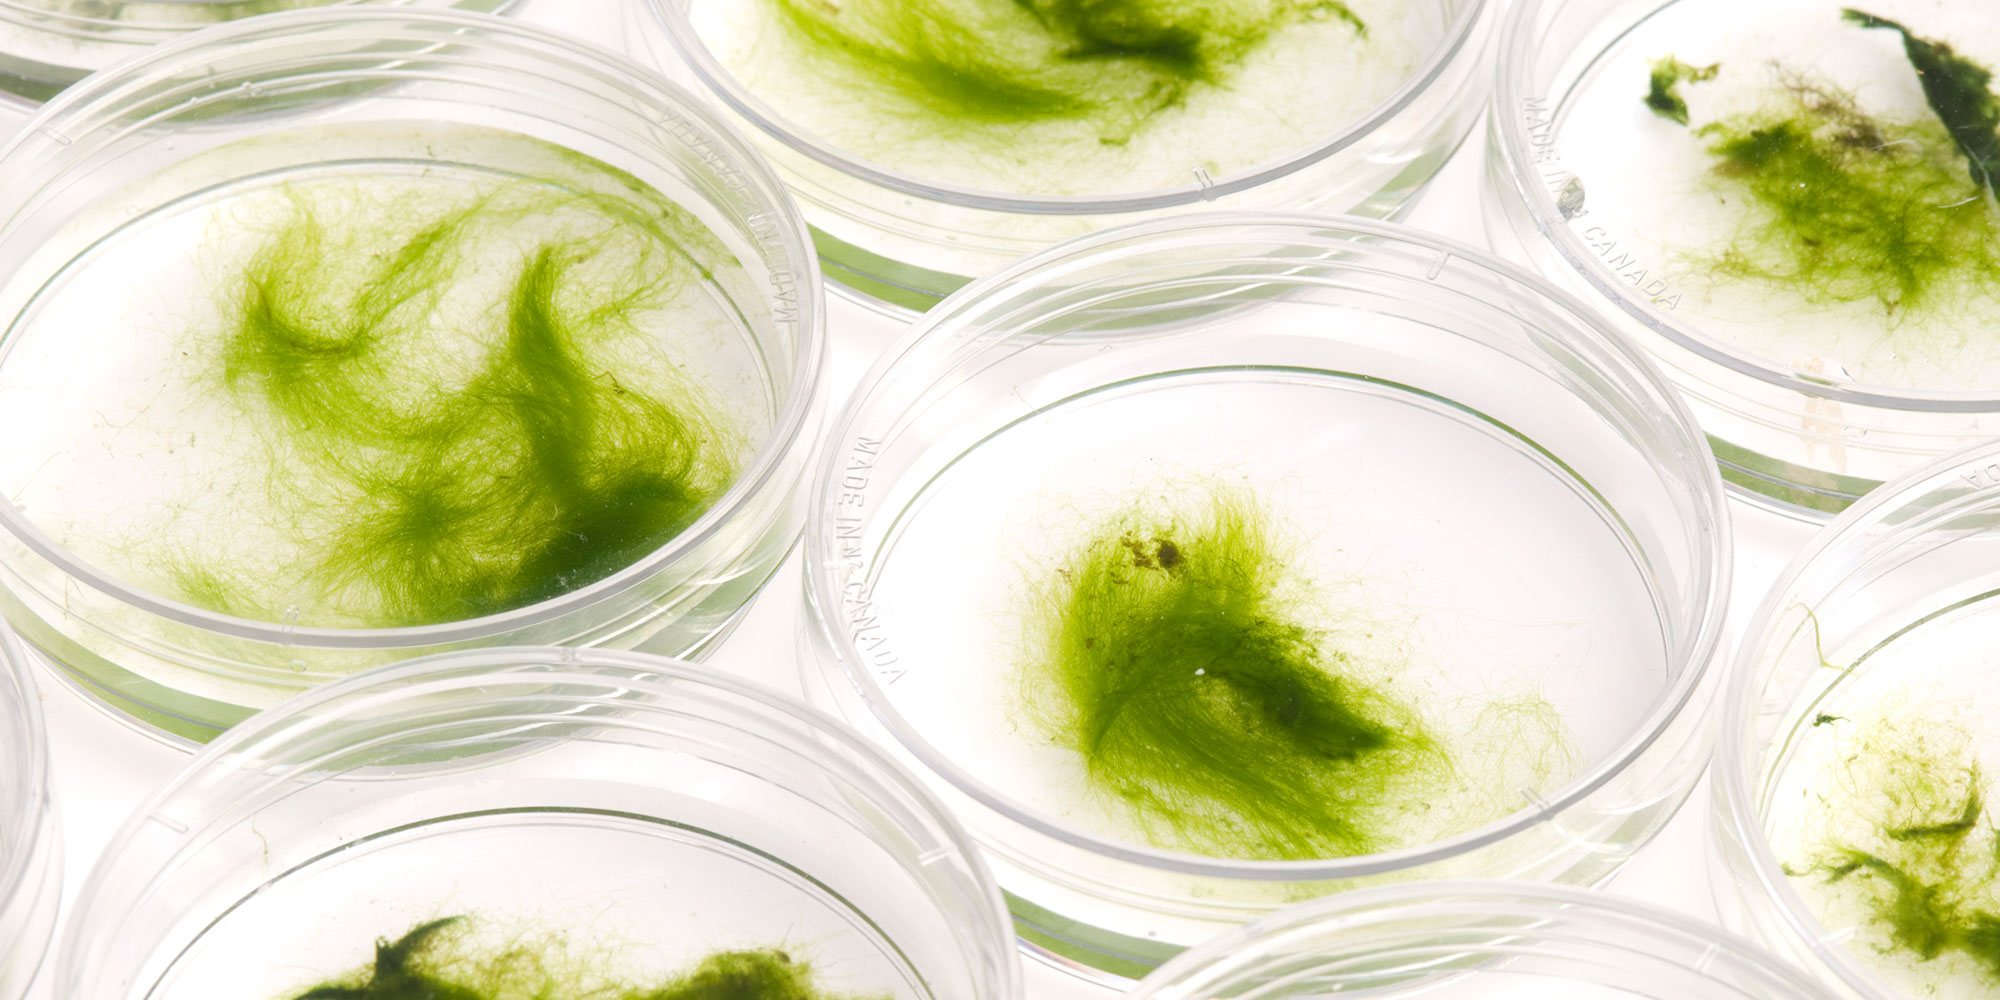 Algae as an Energy Source